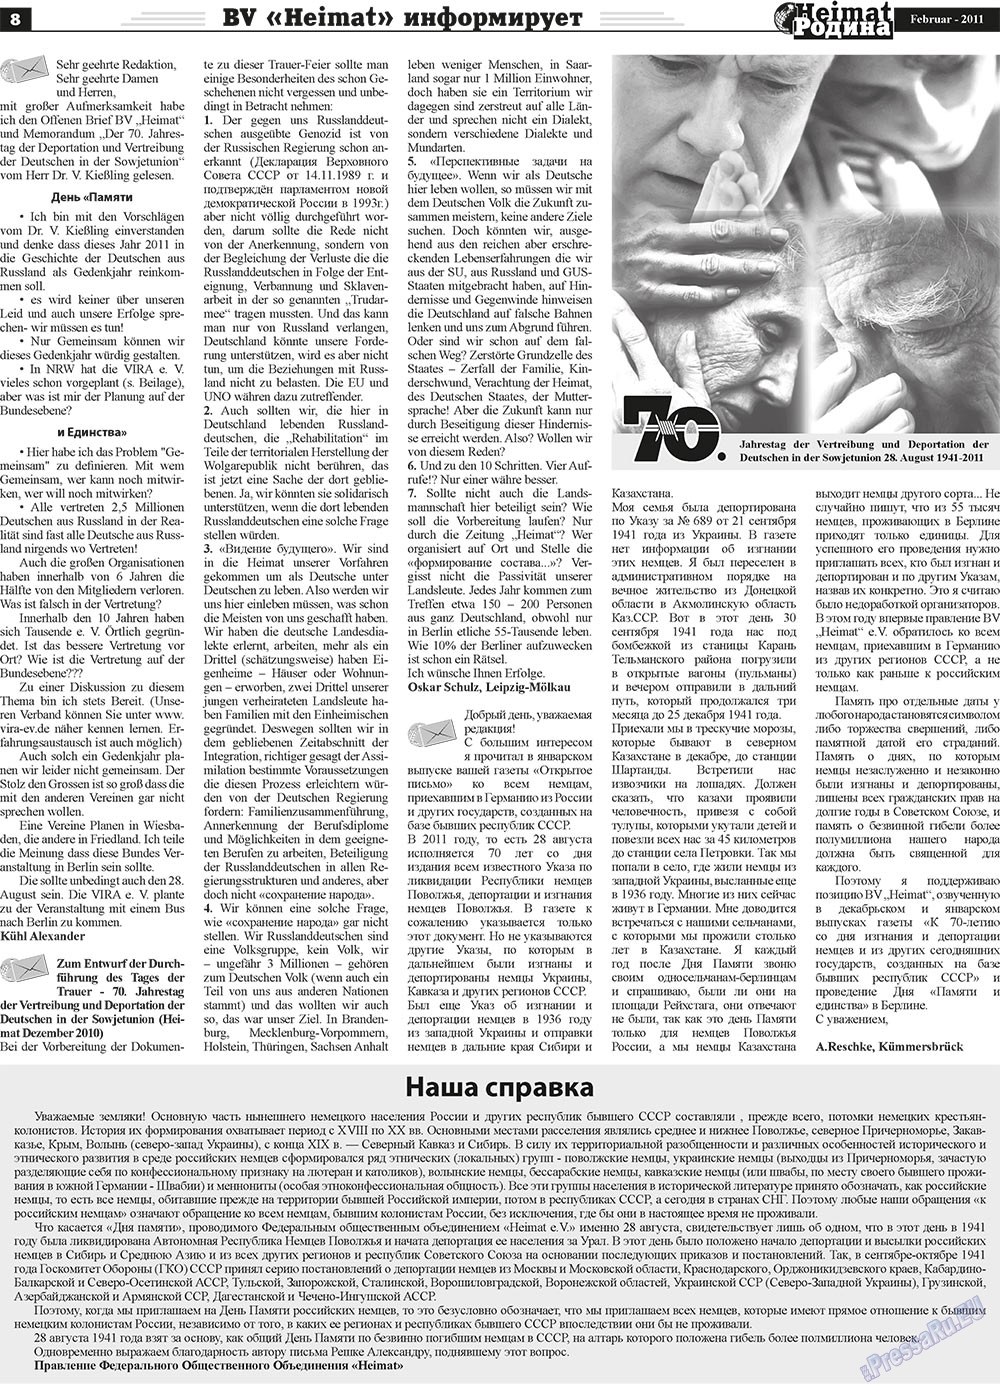 Heimat-Родина (газета). 2011 год, номер 2, стр. 8